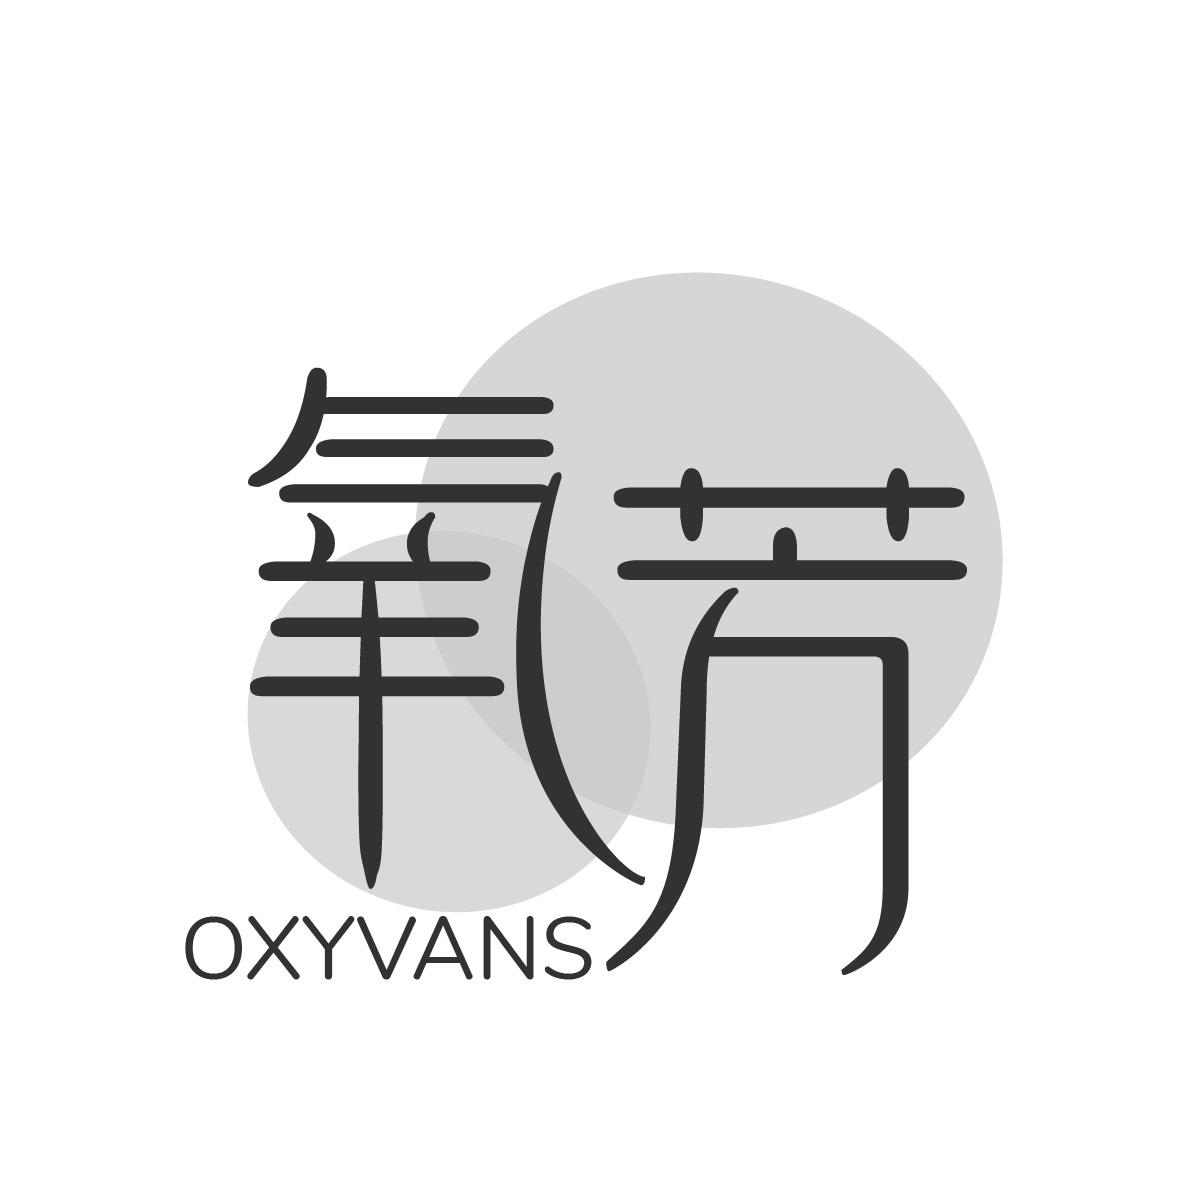  OXYVANS